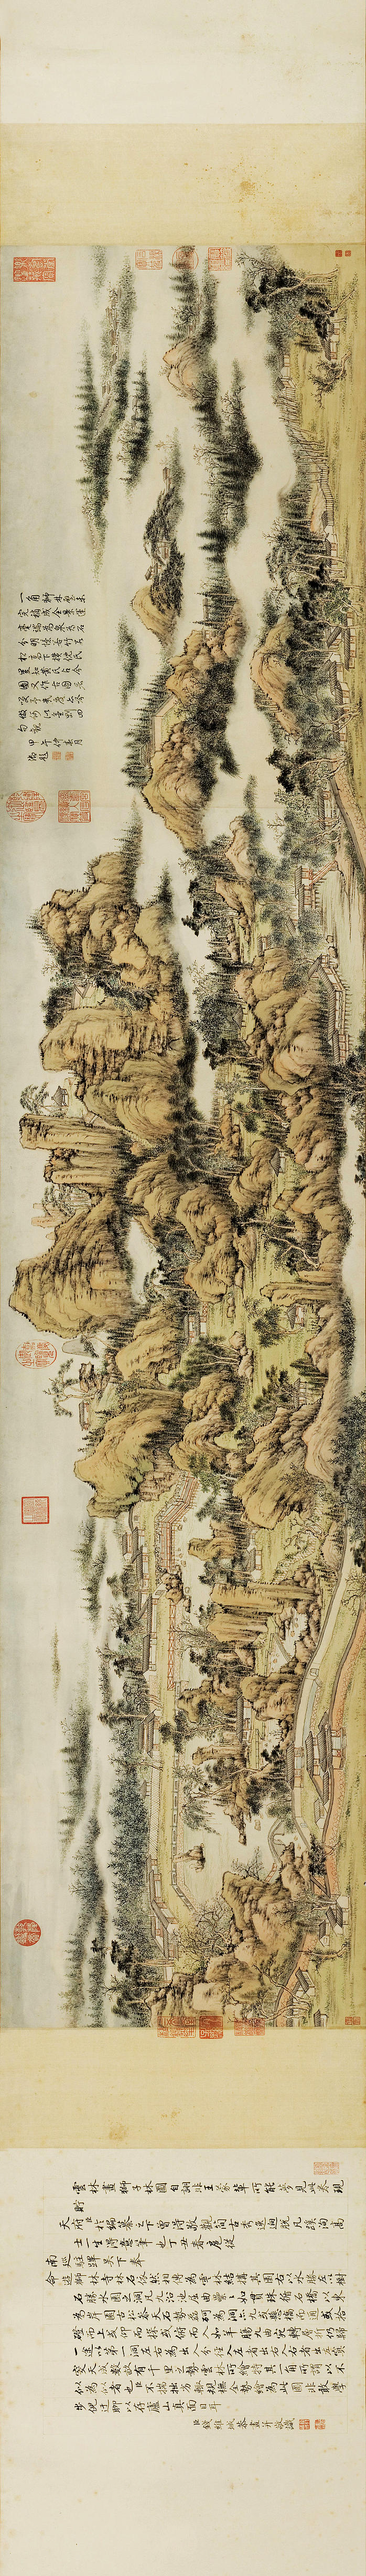 清 钱维城 狮子林图卷 加拿大阿尔伯特博物 (22384x3181px 300)